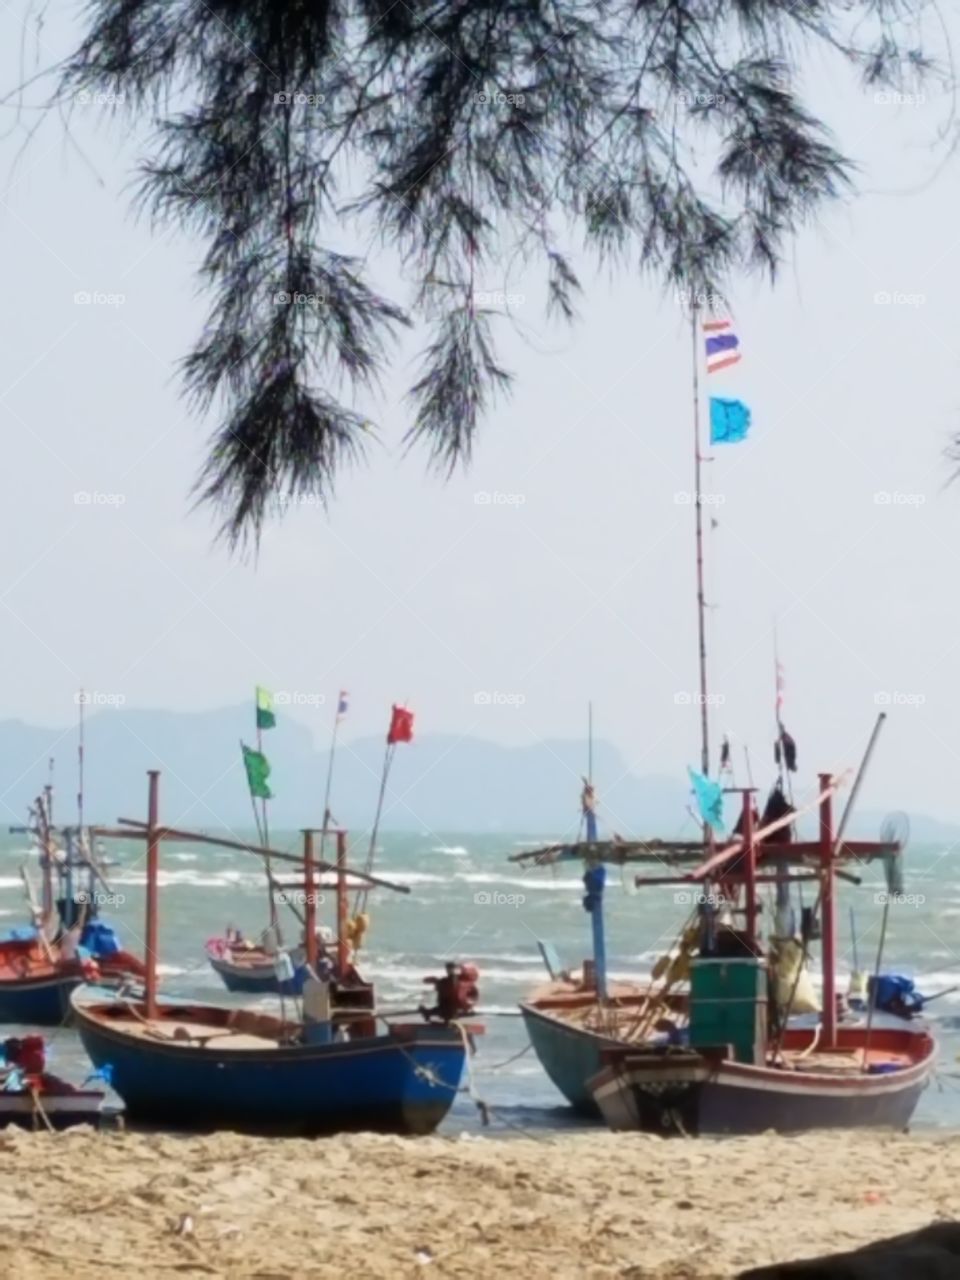 Thailand Boats